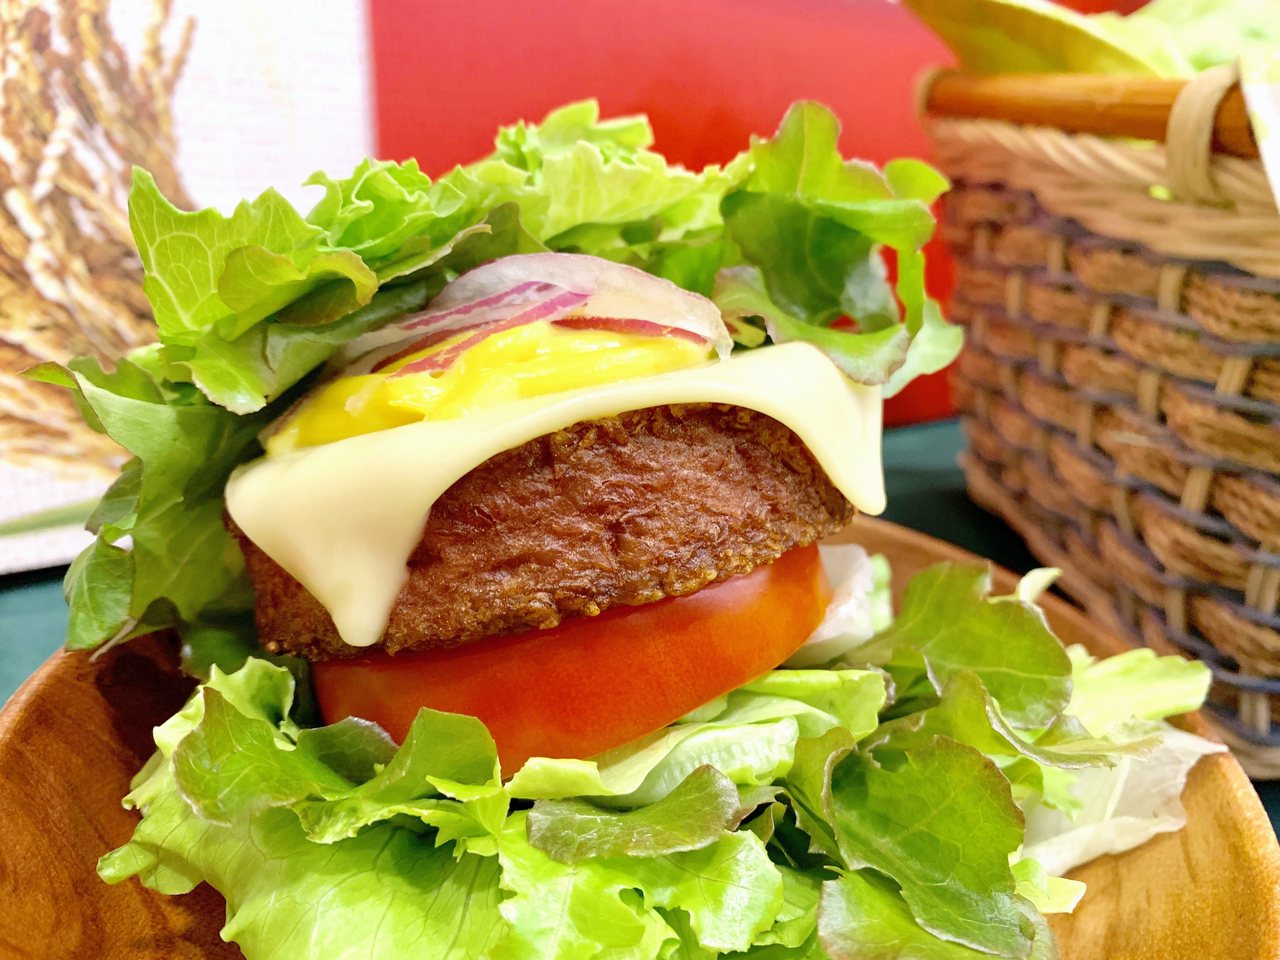 圖為使用美國BeyondMeat植物肉漢堡排特製的漢堡。記者張芳瑜攝影／報系資料照